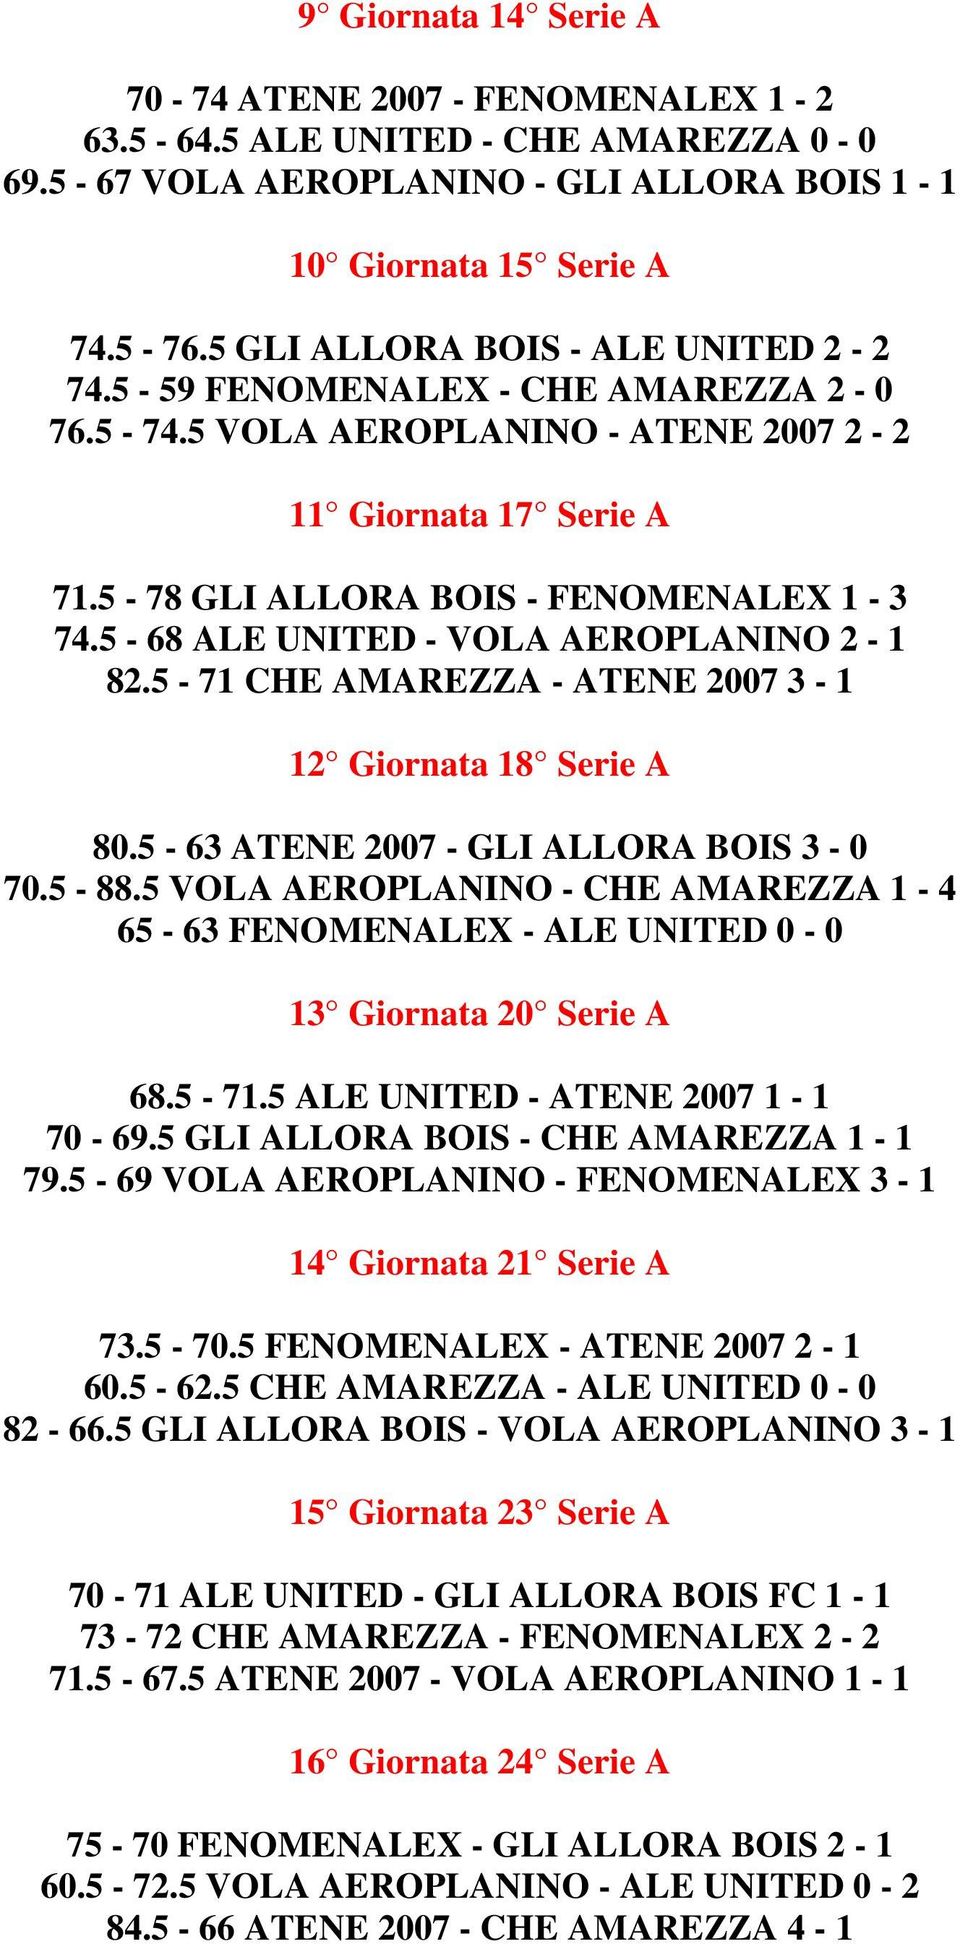 5-68 ALE UNITED - VOLA AEROPLANINO 2-1 82.5-71 CHE AMAREZZA - ATENE 2007 3-1 12 Giornata 18 Serie A 80.5-63 ATENE 2007 - GLI ALLORA BOIS 3-0 70.5-88.